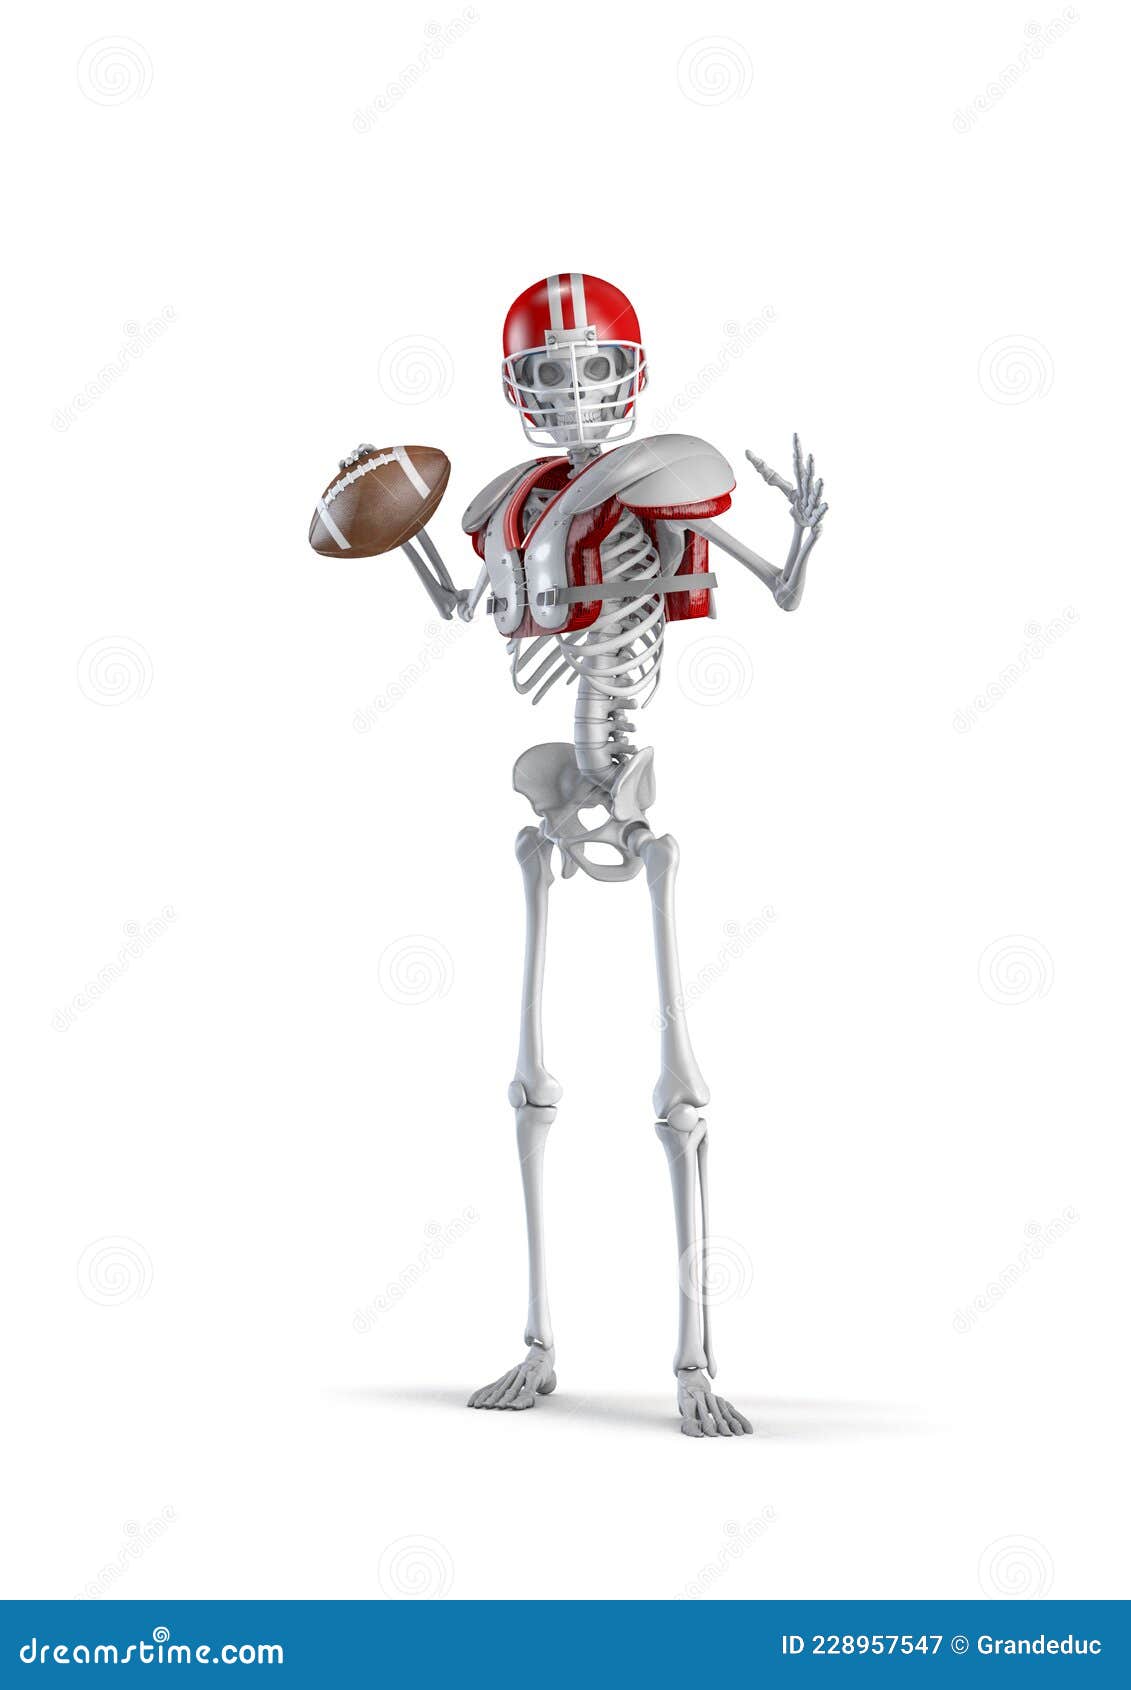 american-football-skeleton-quarterback-d-illustration-male-human-skeleton-figure-wearing-football-helmet-pads-isolated-228957547.jpg